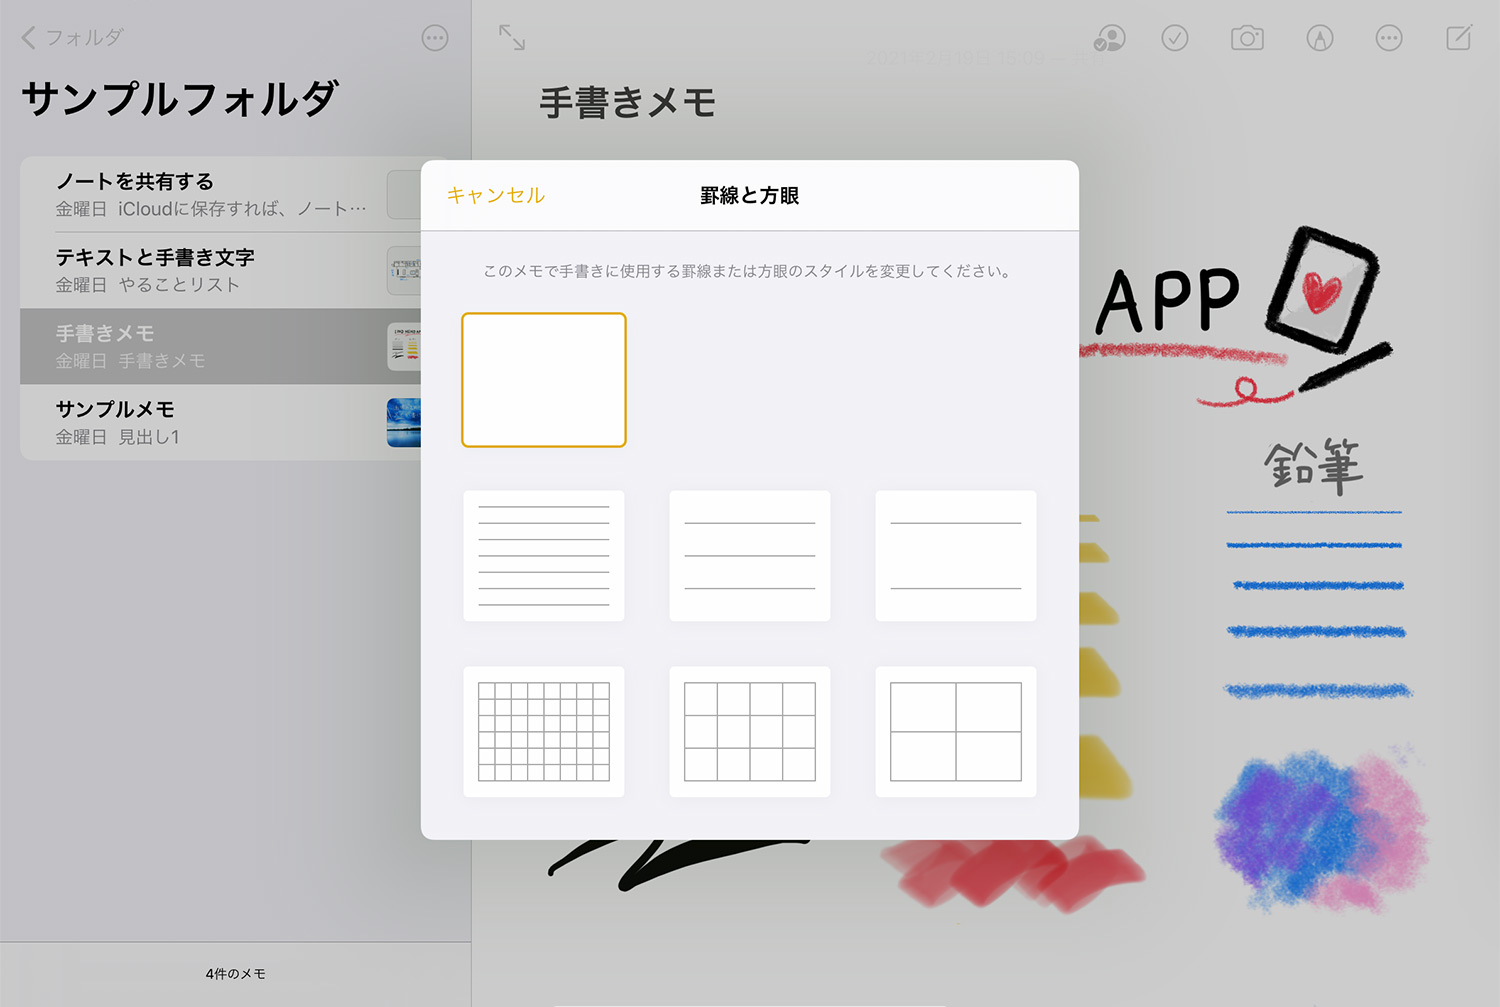 iPad純正メモアプリ：用紙を変更する